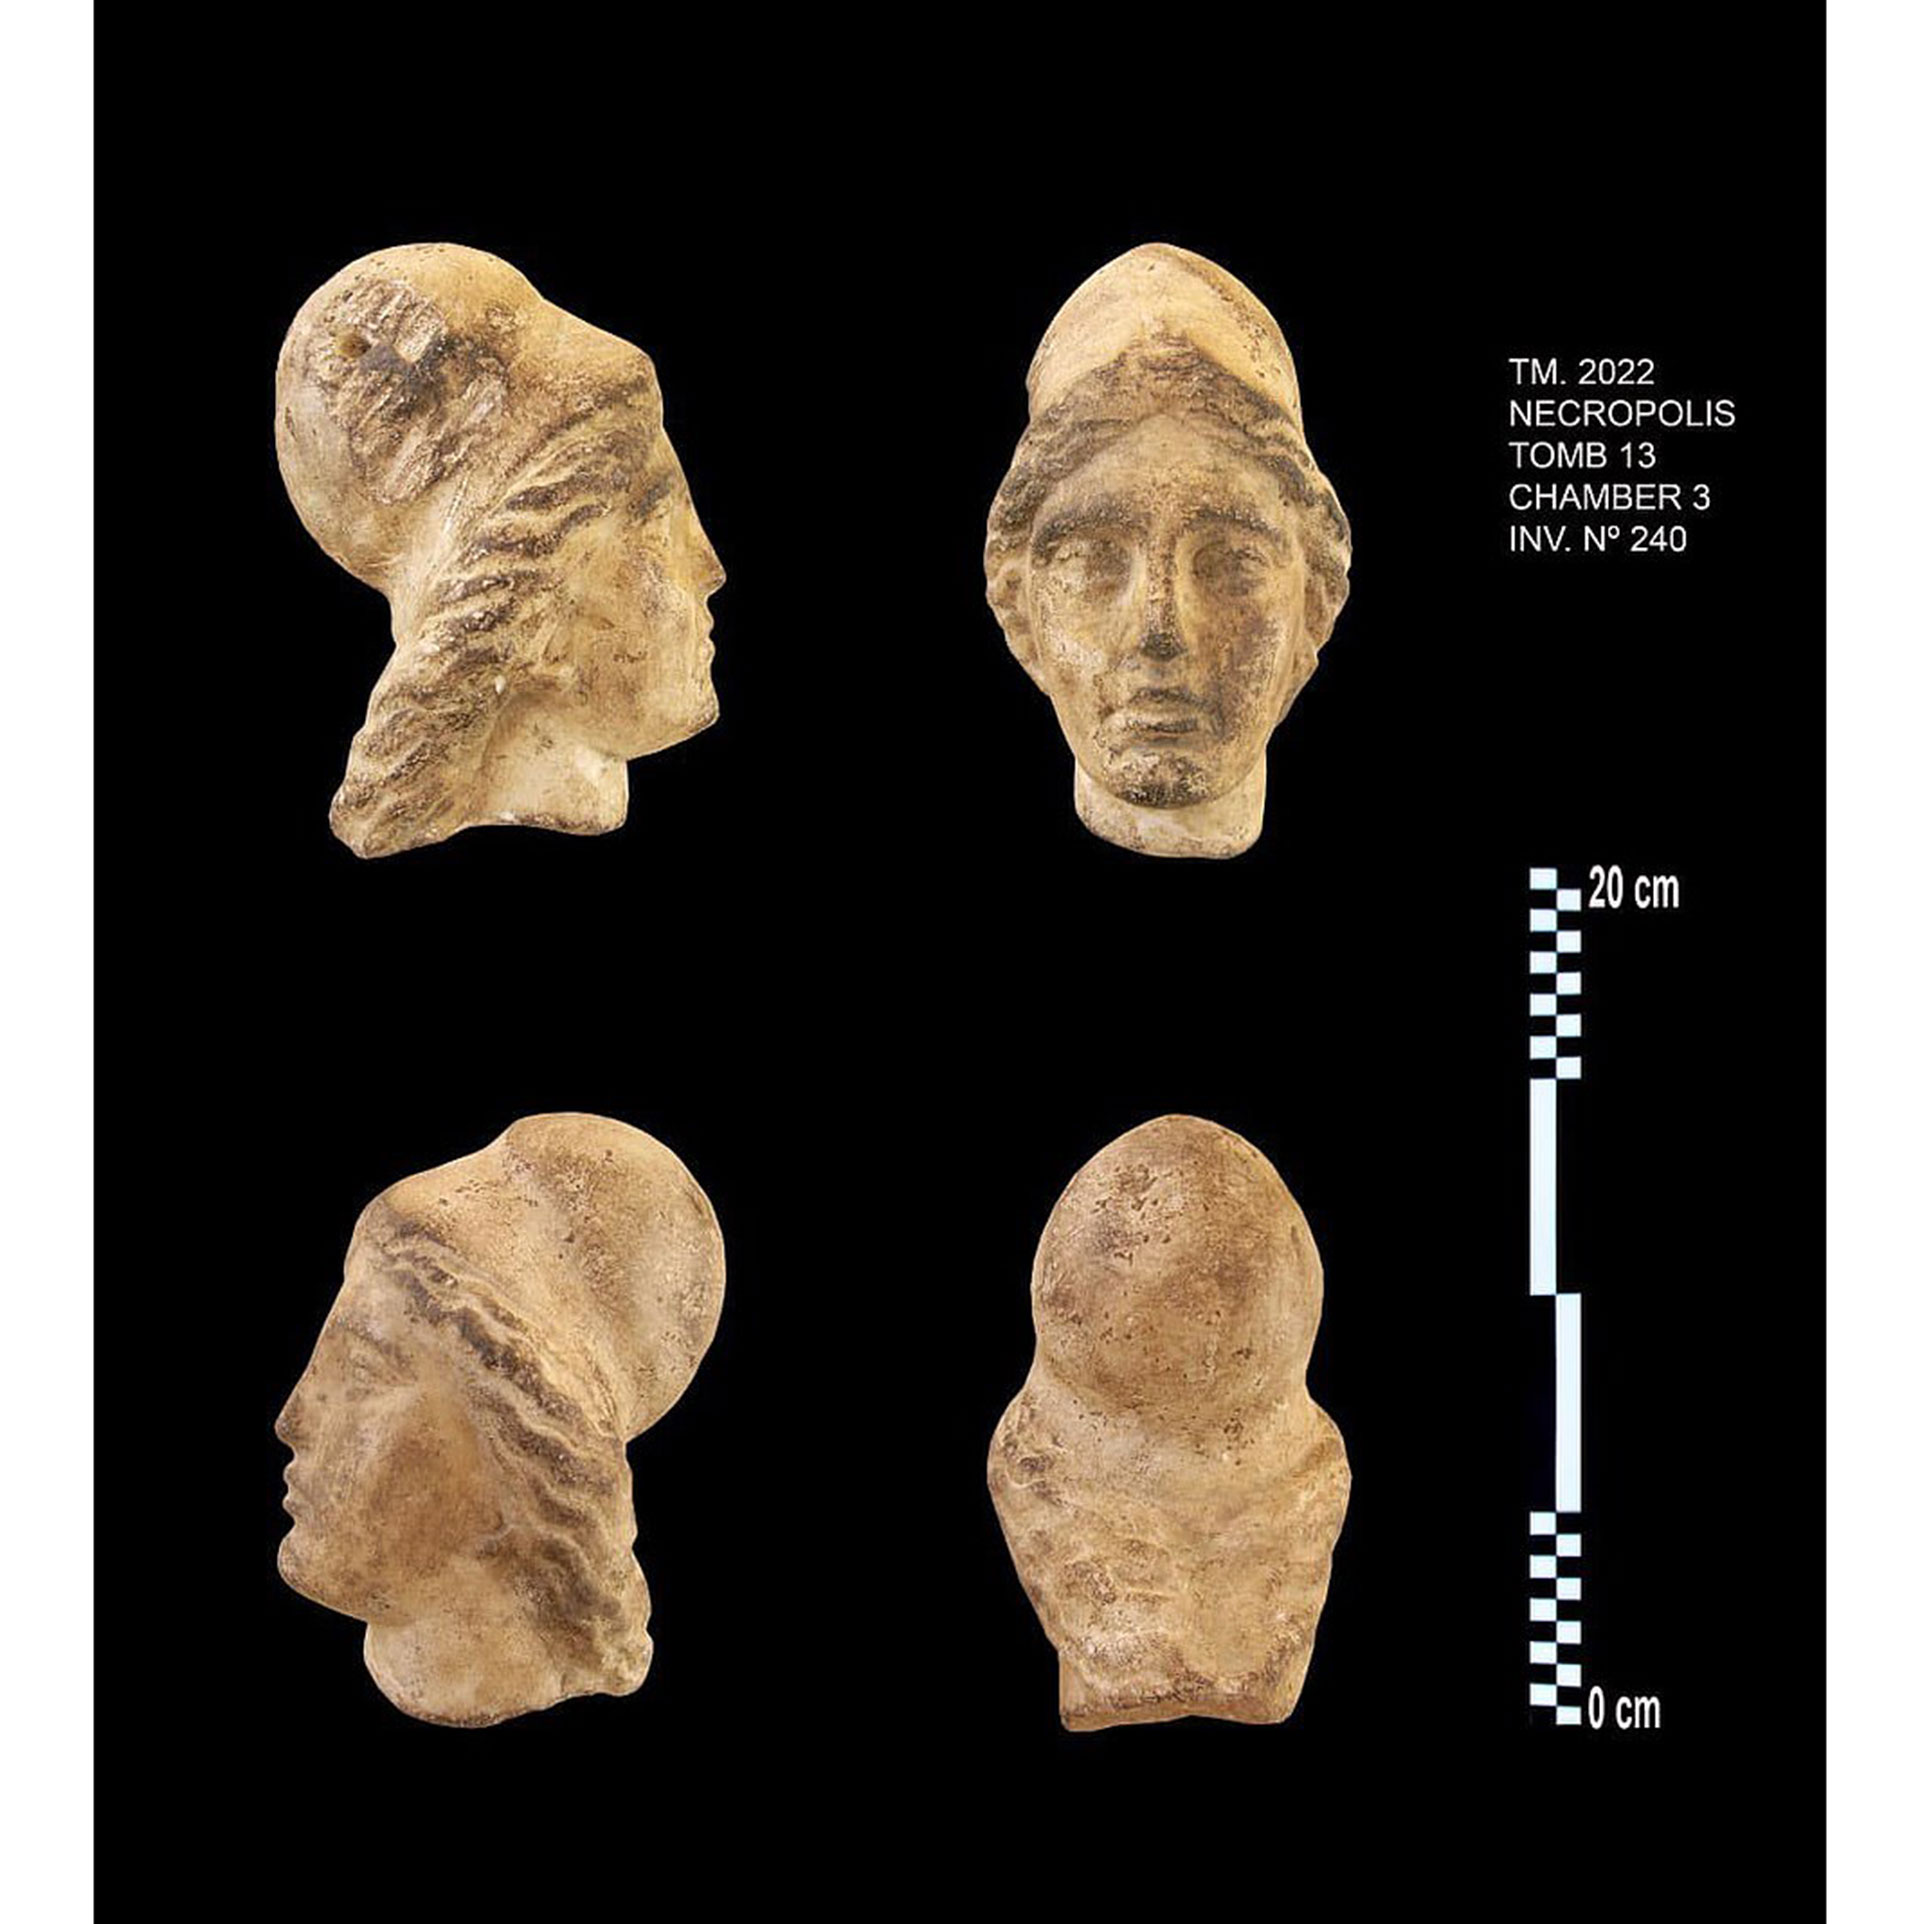 La misión halló las cabezas de dos estatuas hechas de alabastro, una de ellas de una persona del período ptolemaico, y la otra probablemente una representación de la esfinge